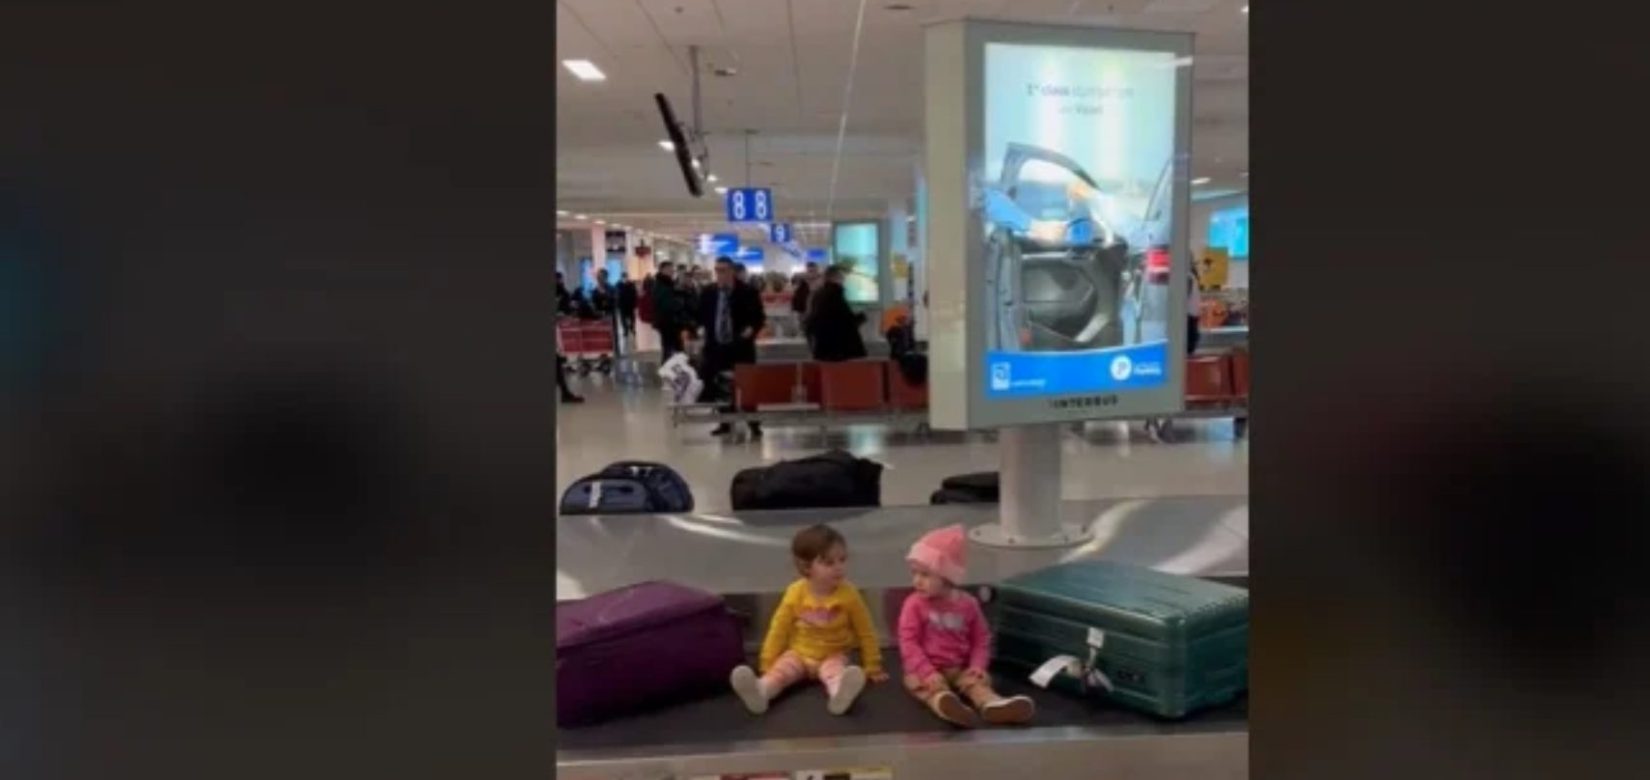 Χριστίνα Μπόμπα: Αντιδράσεις για το βίντεο με τις δίδυμες κόρες της στον ιμάντα αποσκευών